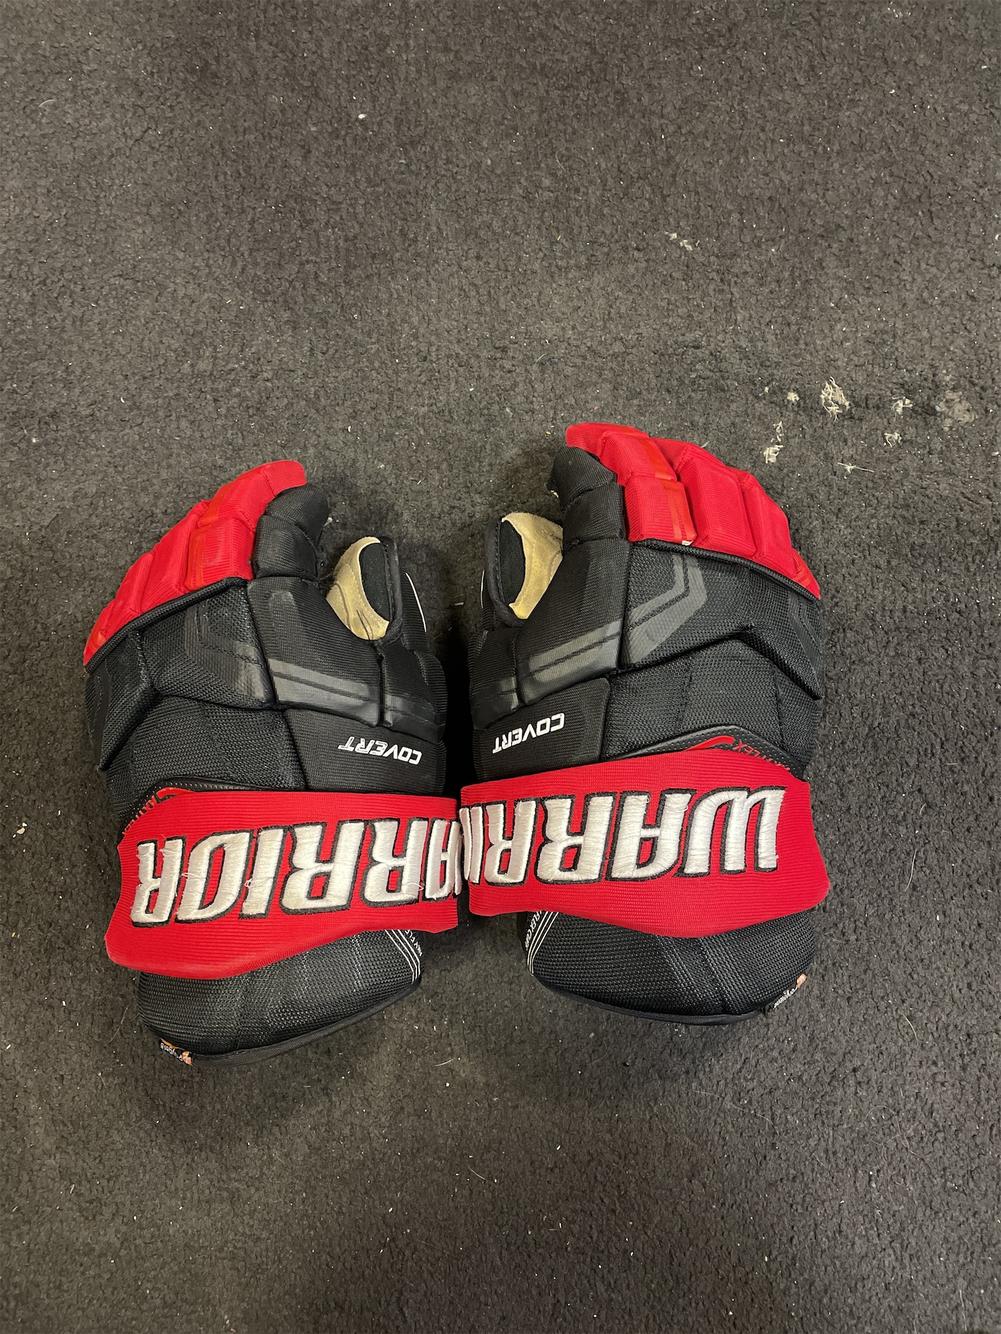 New Warrior Covert QRE3 Senior Ice Hockey Player Gloves 14" inch SR Black Red 